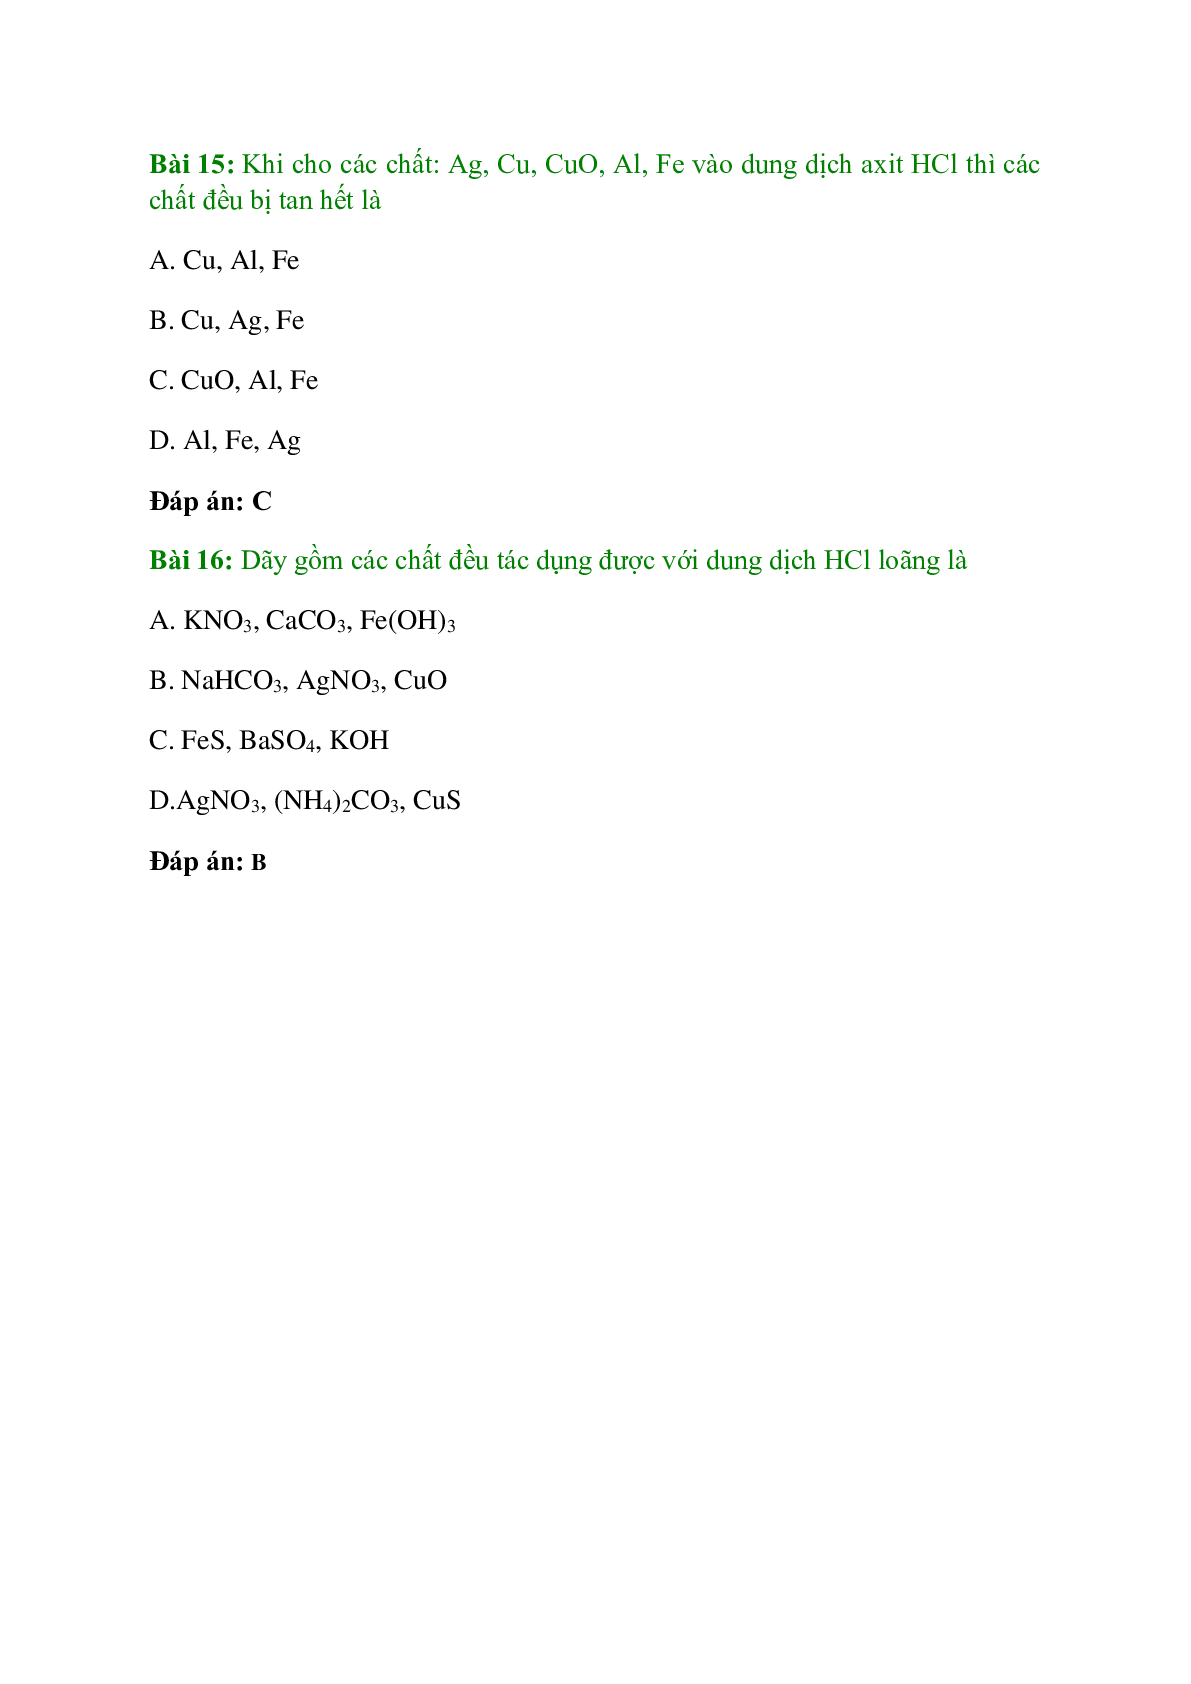 Trắc nghiệm Hiđro clorua - Axit clohiđric và muối clorua có đáp án - Hóa học 10 (trang 6)